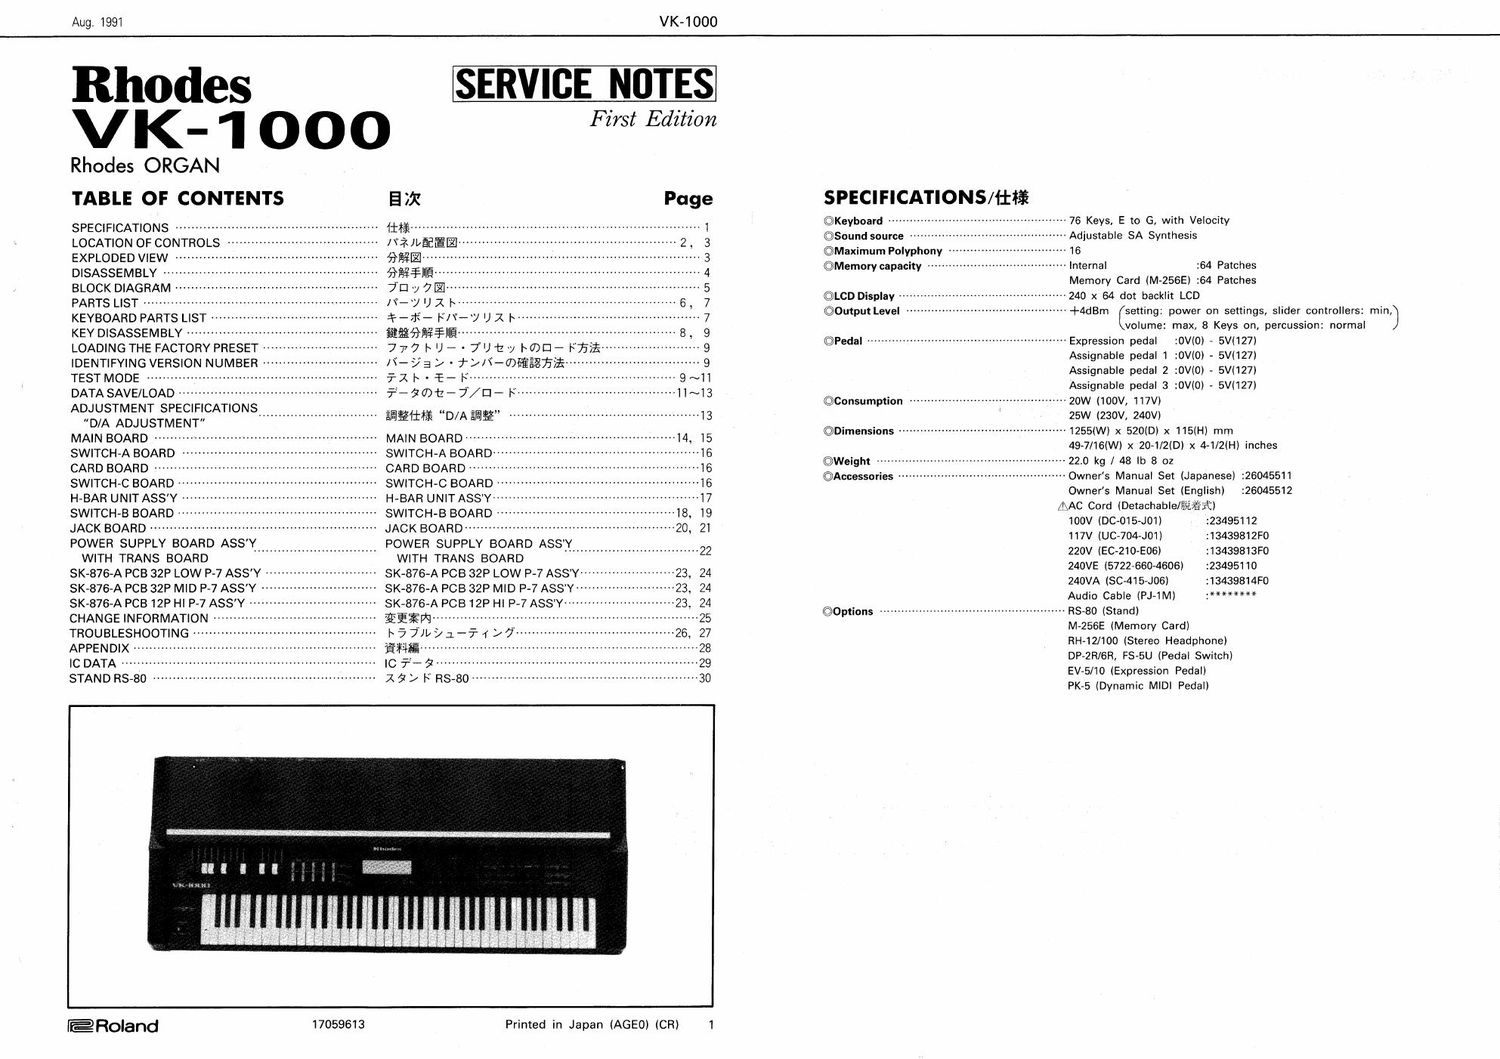 roland rhodes vk 1000 service manual